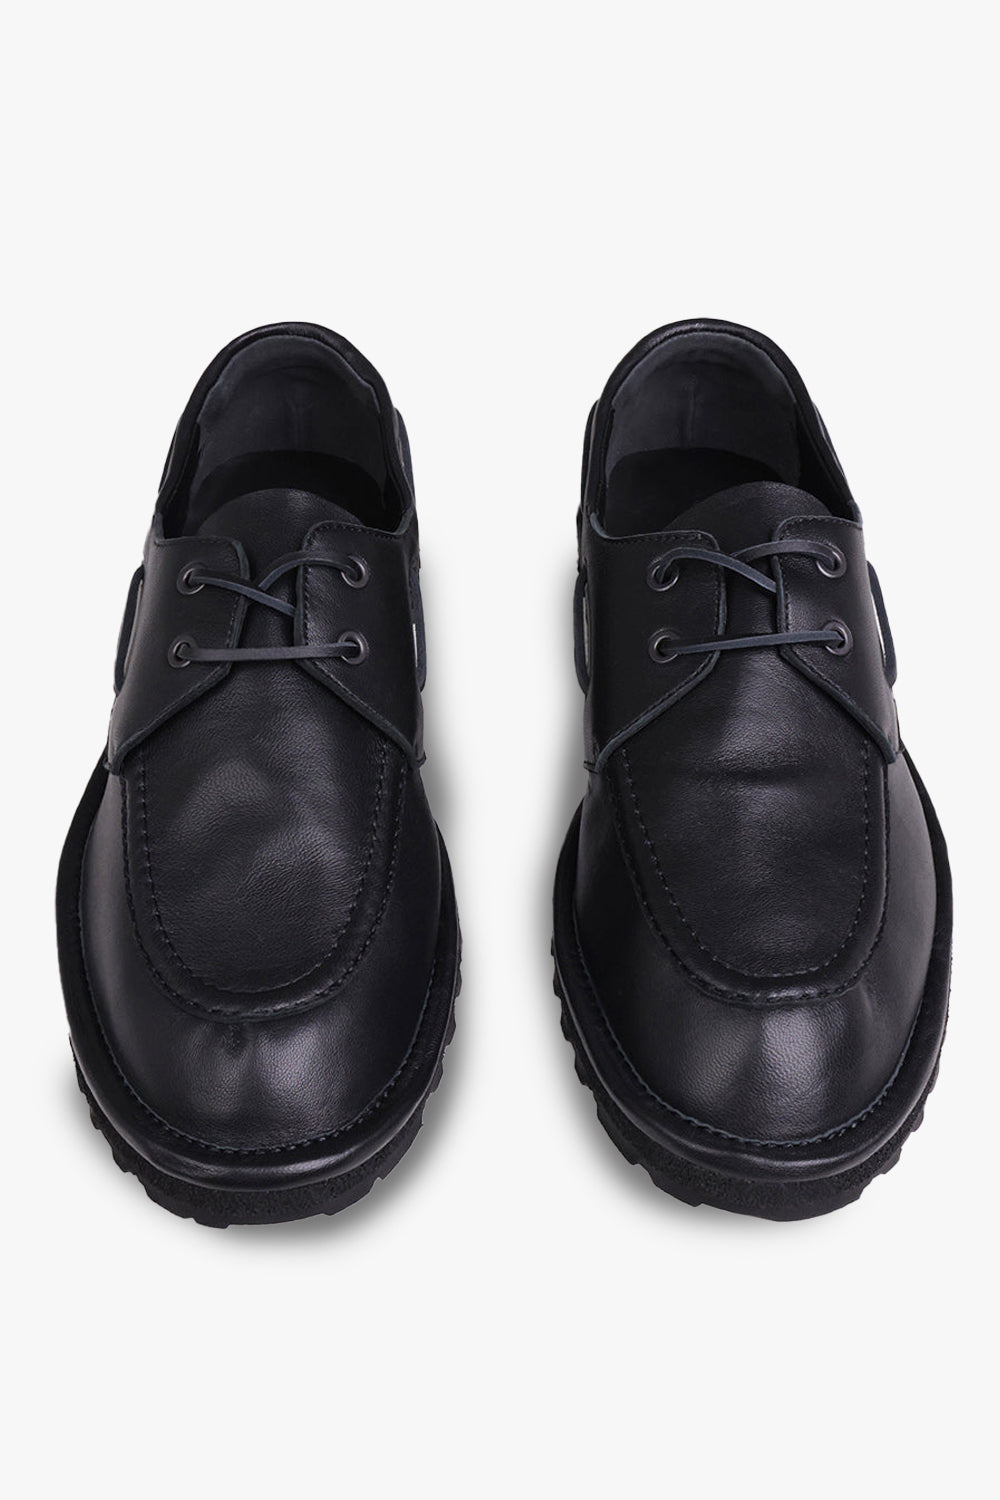 DRIES VAN NOTEN SHOES Leather Lace Up Shoes | Black